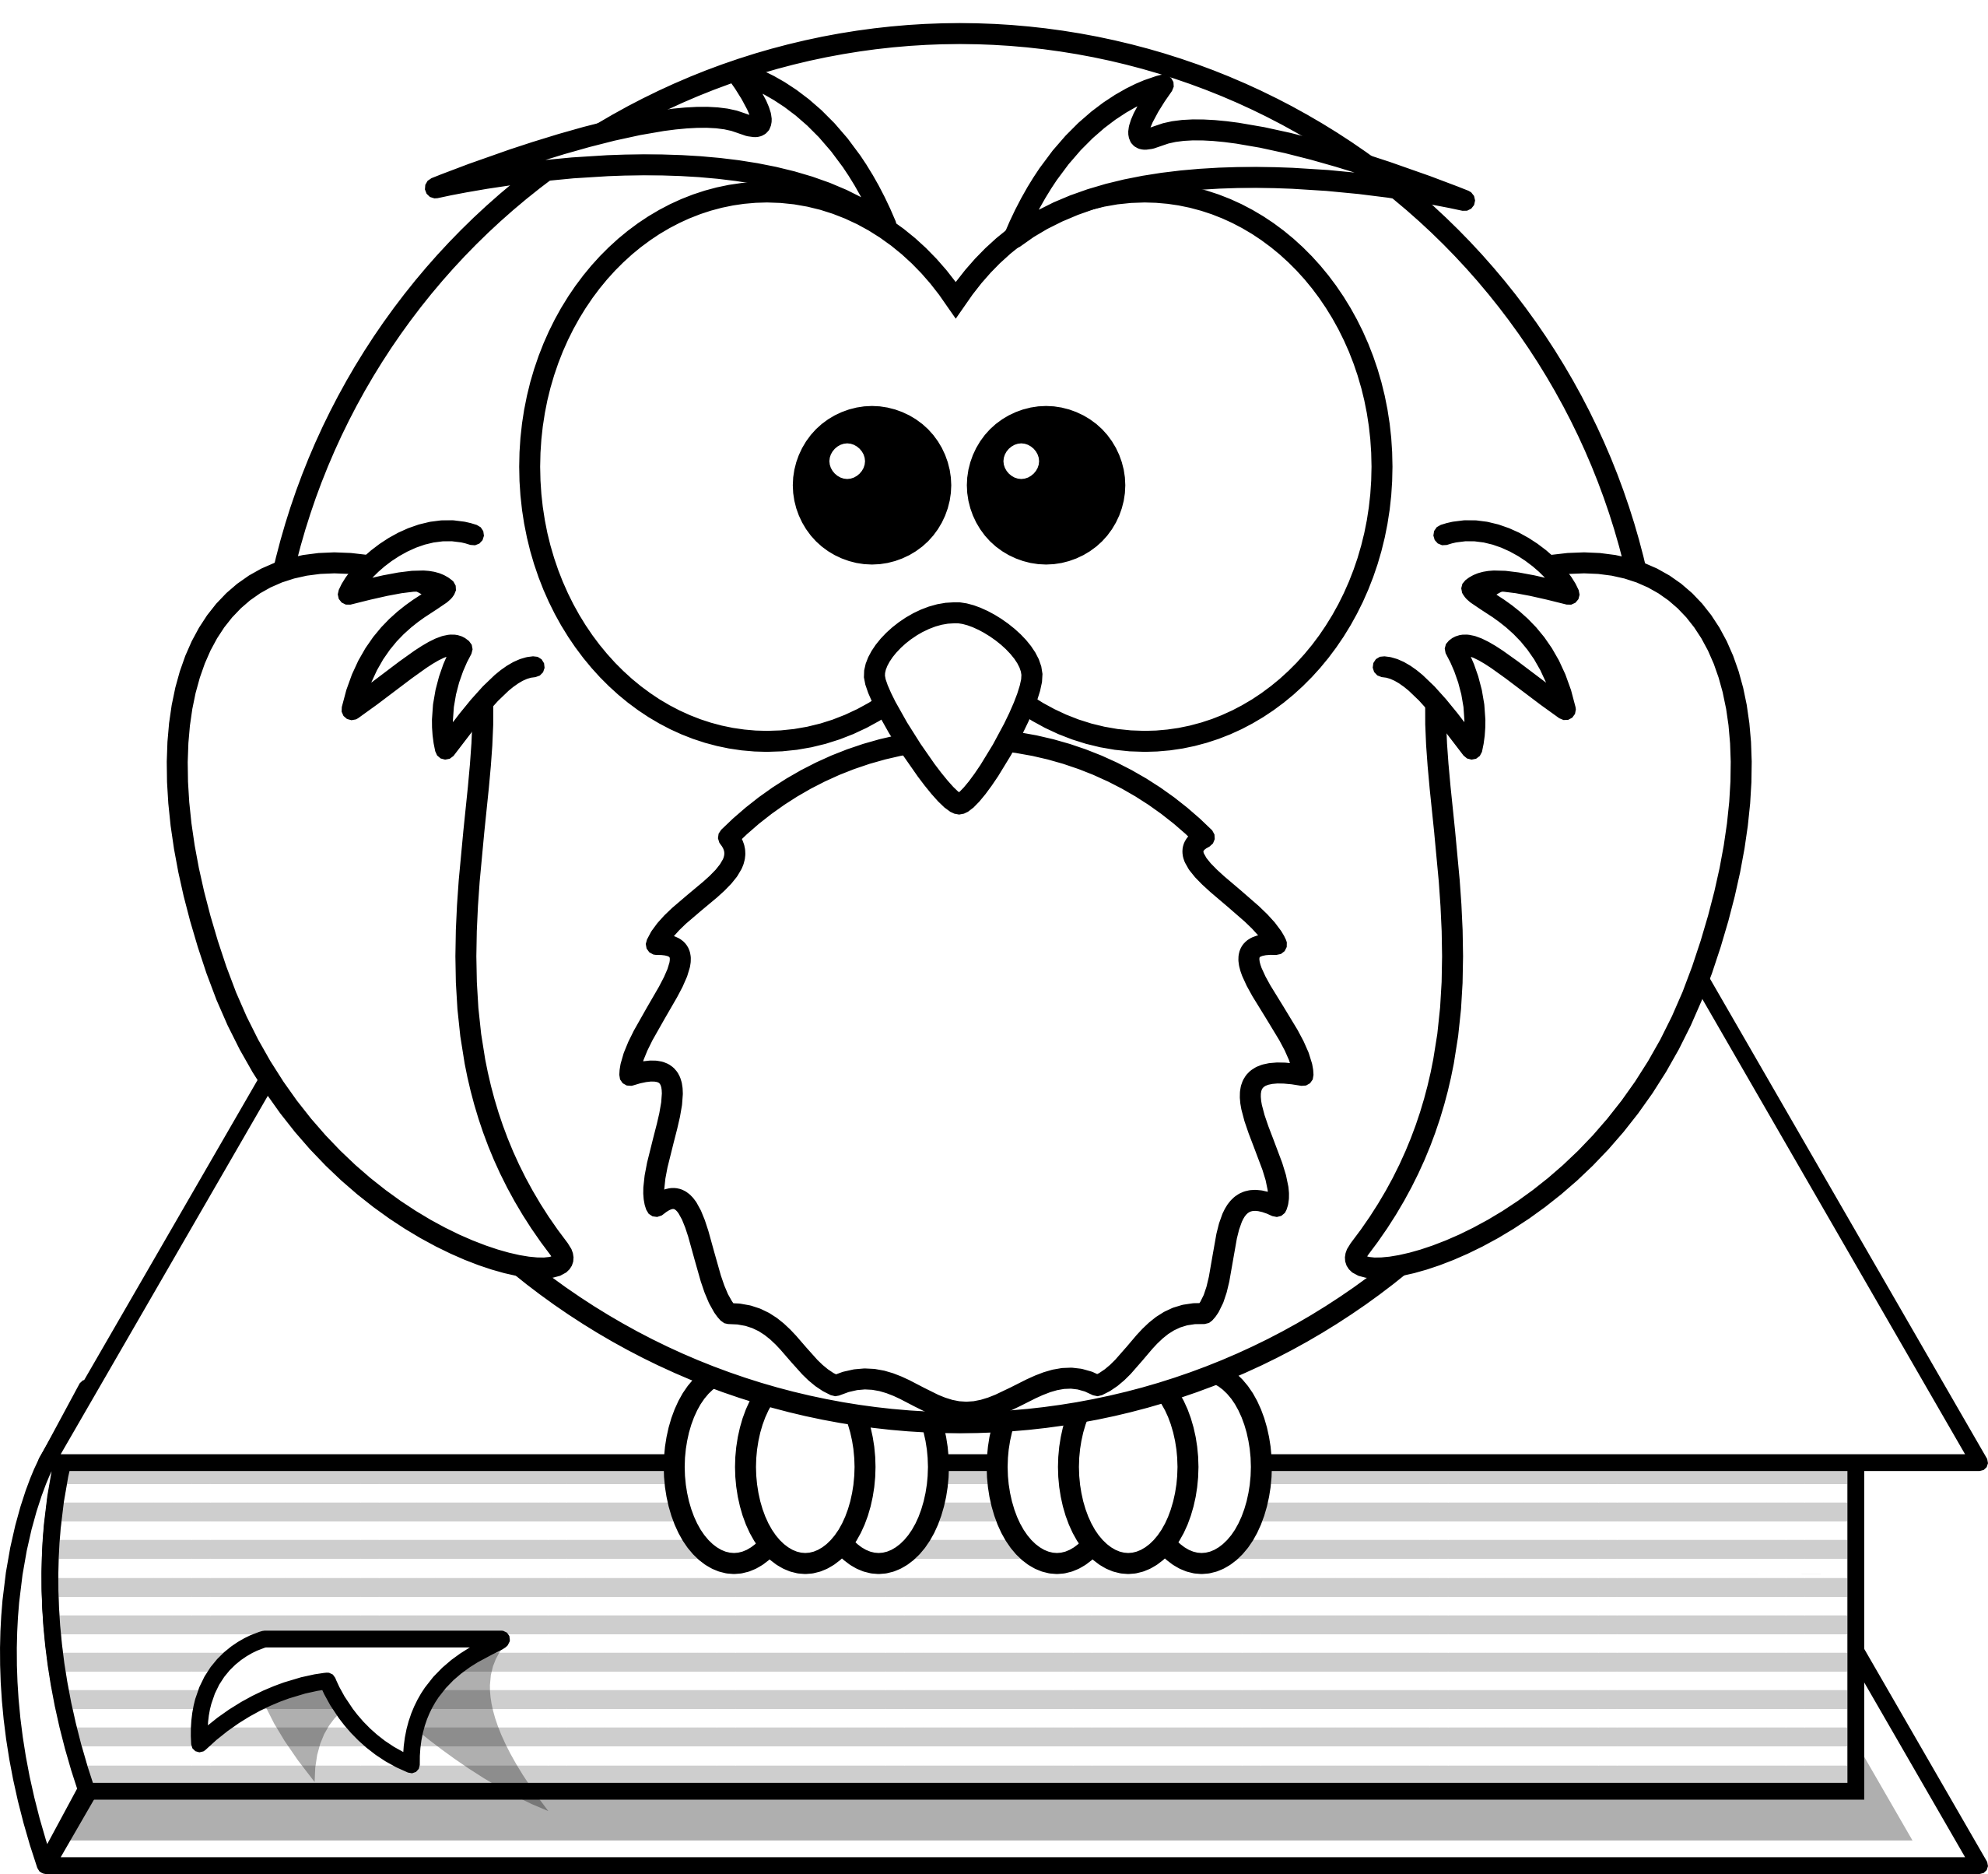 clipartist.net » Clip Art » Lemmling Cartoon Owl Sitting on a Book 